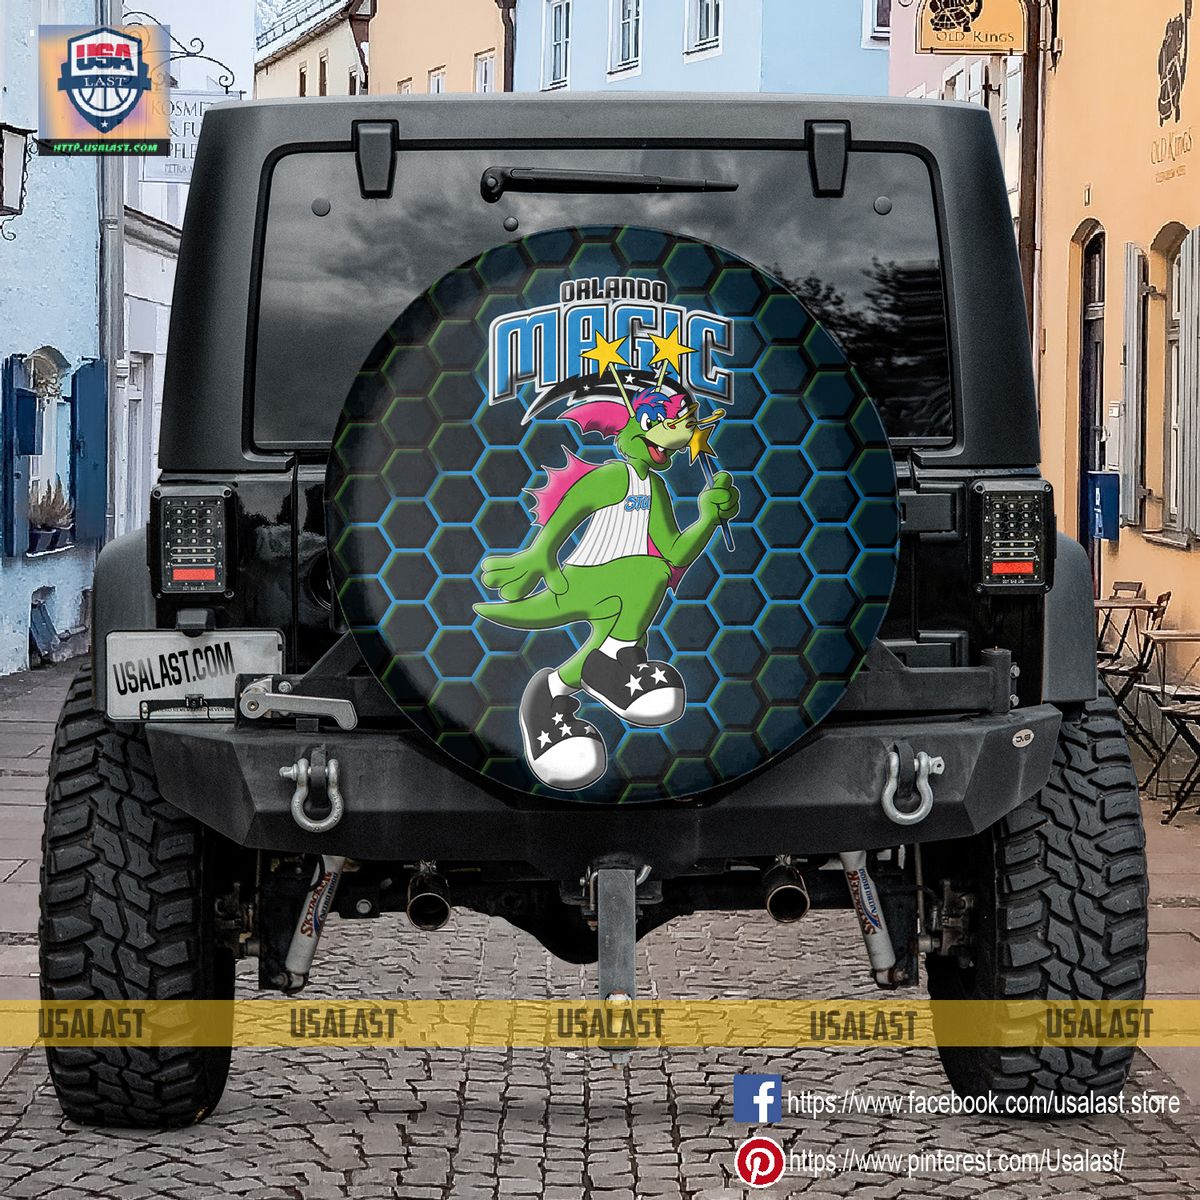 AMAZING Orlando Magic NBA Mascot Spare Tire Cover